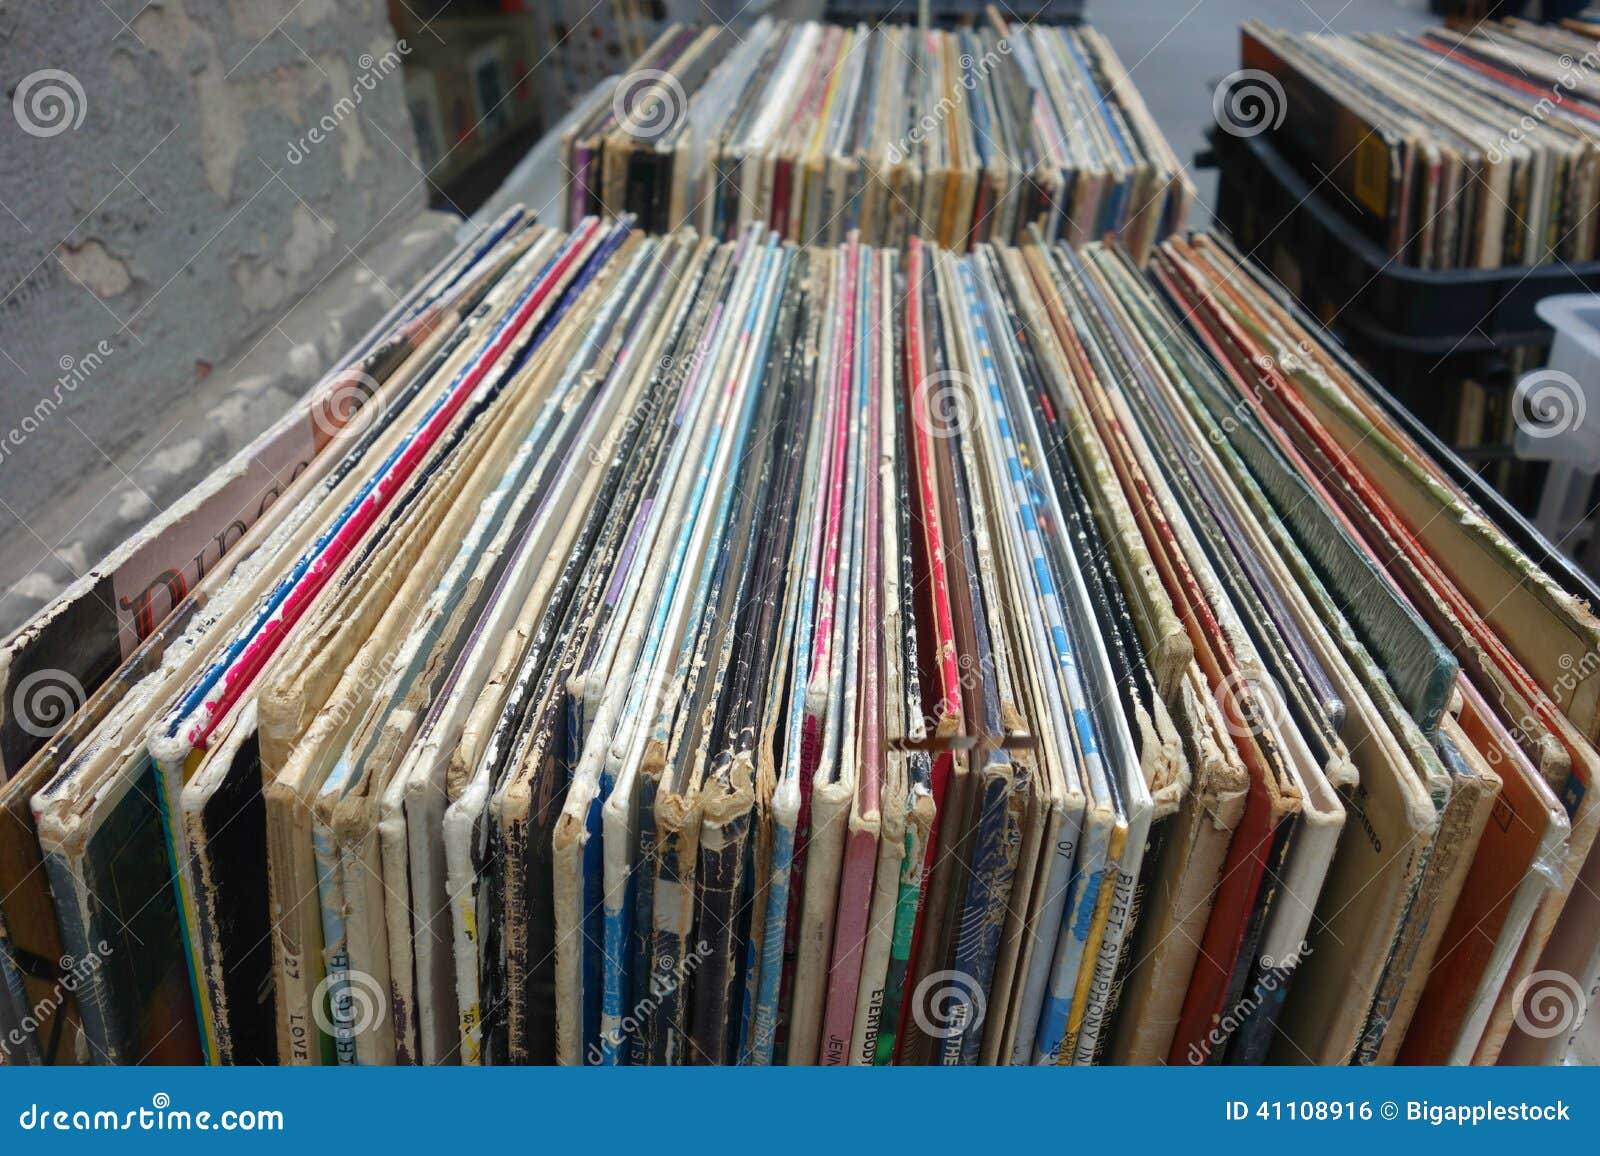 Vinyl Records stock Image of vinyl, sale, retro - 41108916